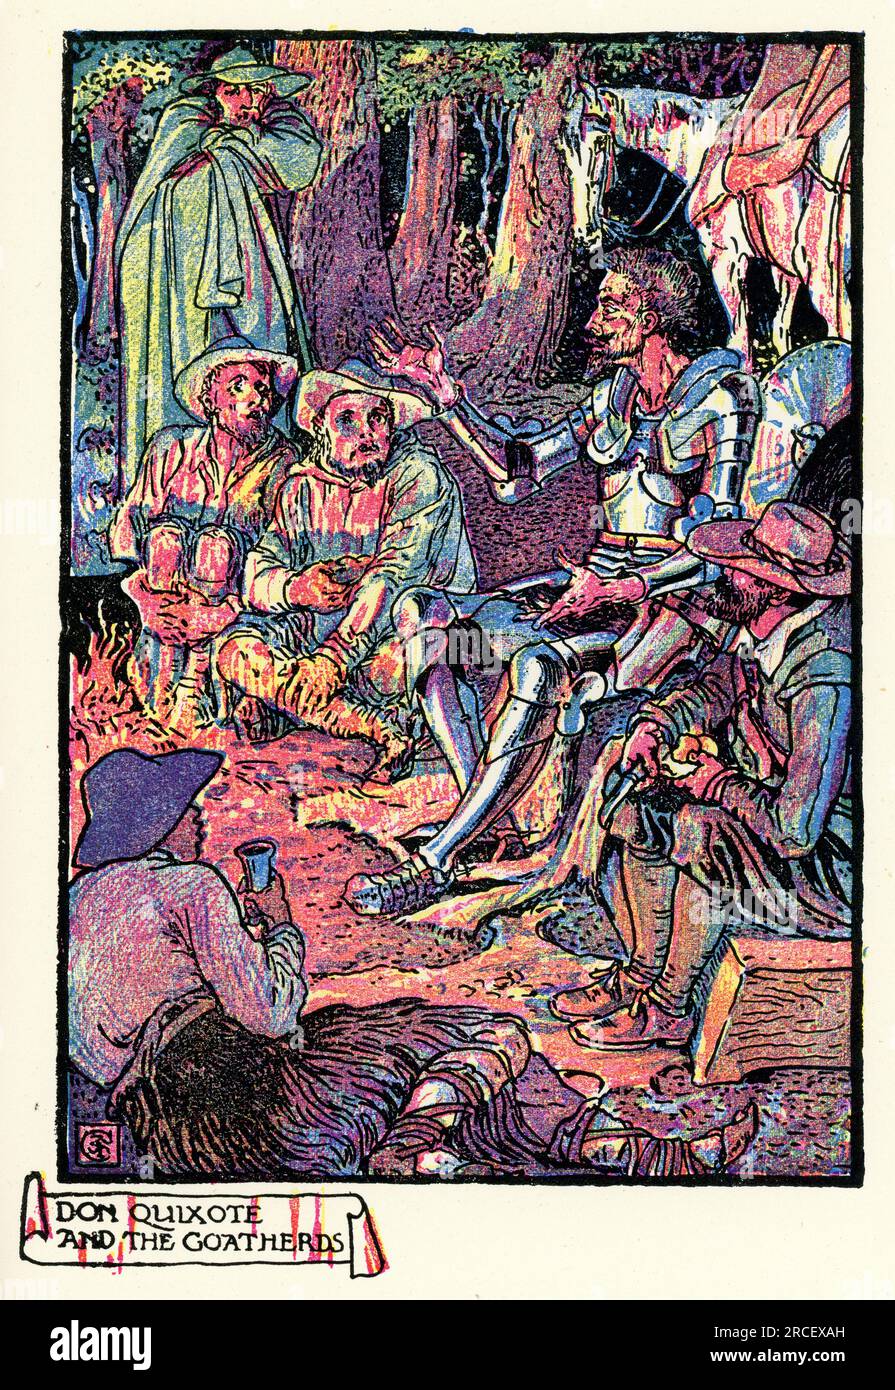 Don Quichotte de la Mancha, et les poules, de Walter Crane, Don Quichotte est un roman épique espagnol de Miguel de Cervantes. Banque D'Images